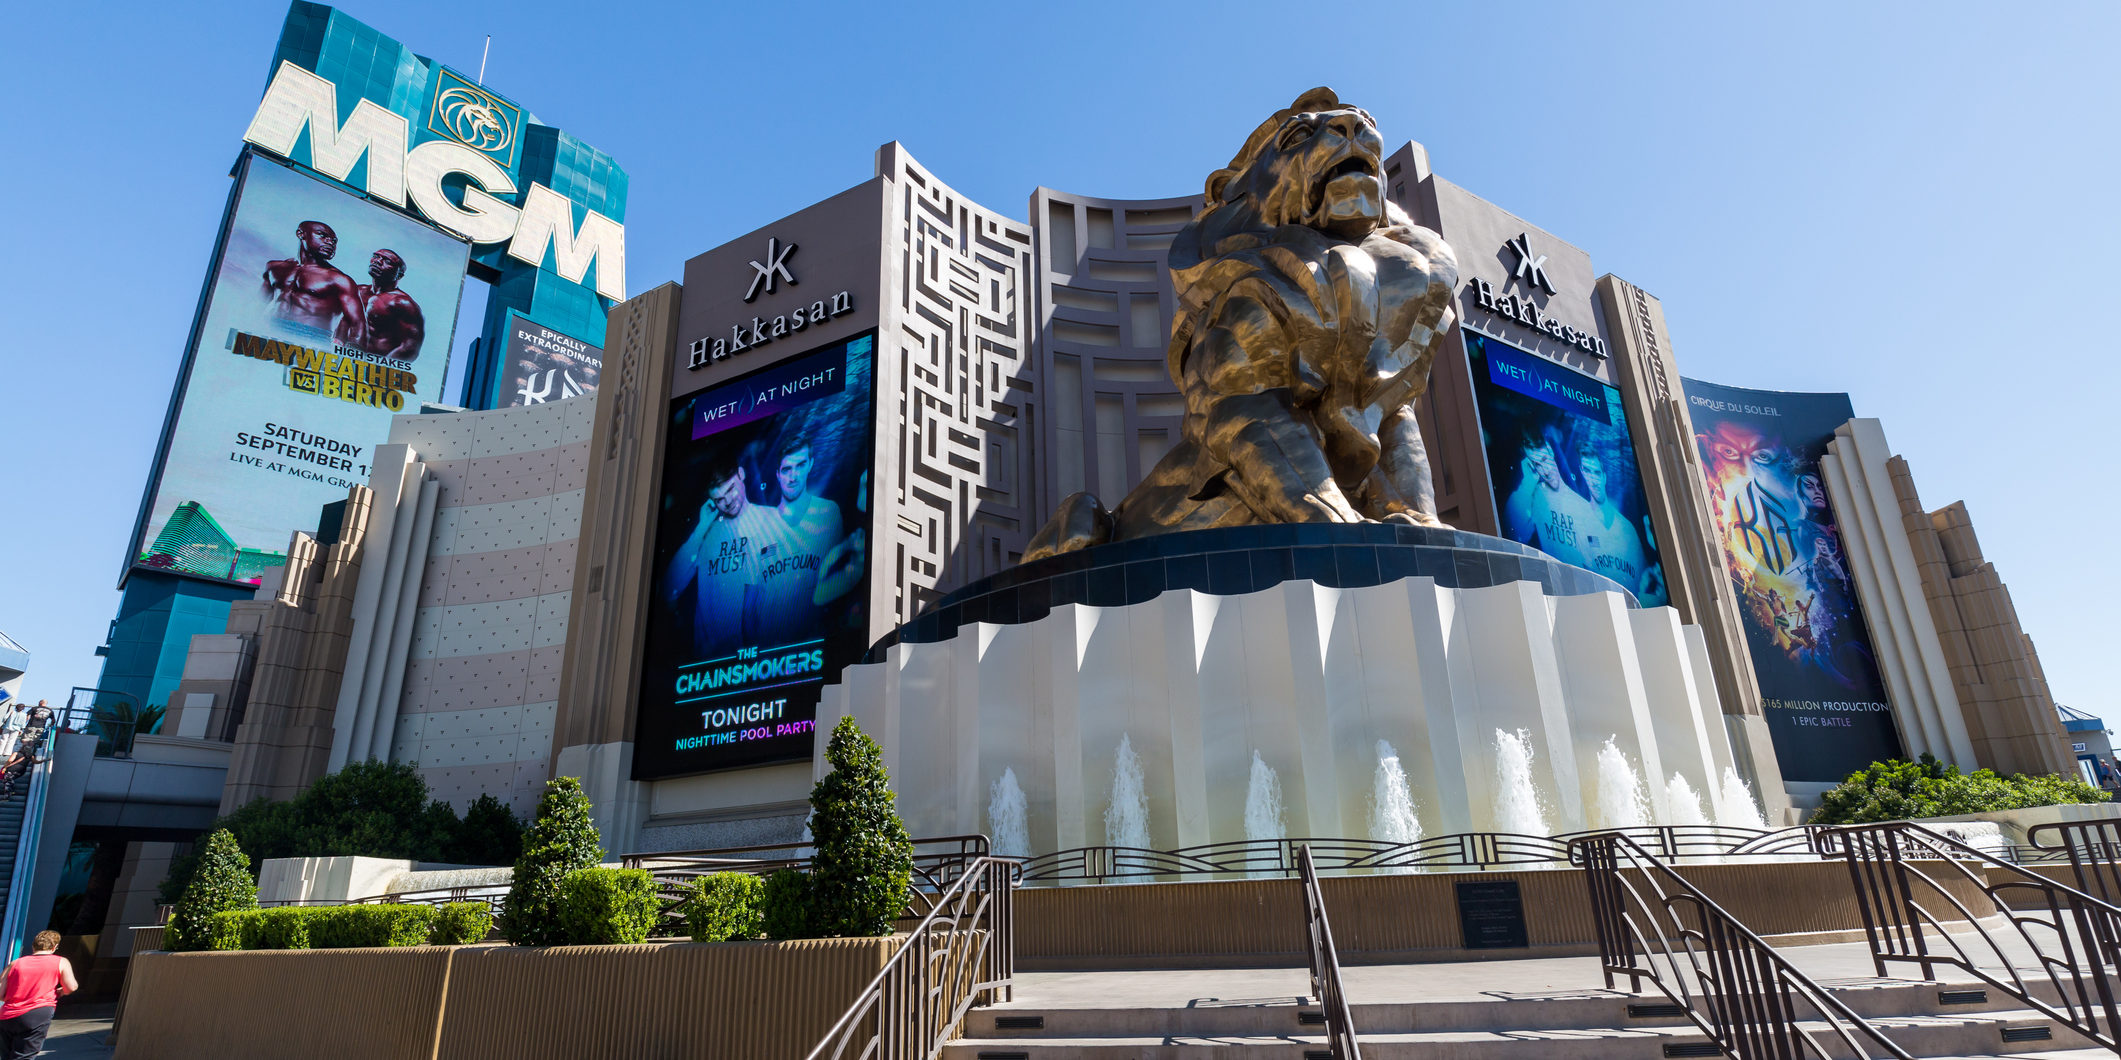 Las Vegas, USA - September 9, 2015: Exterior views of the MGM Grand Casino on the Las Vegas Strip on September 9, 2015. The MGM Grand Casino is a famous and popular luxury casino in Vegas.